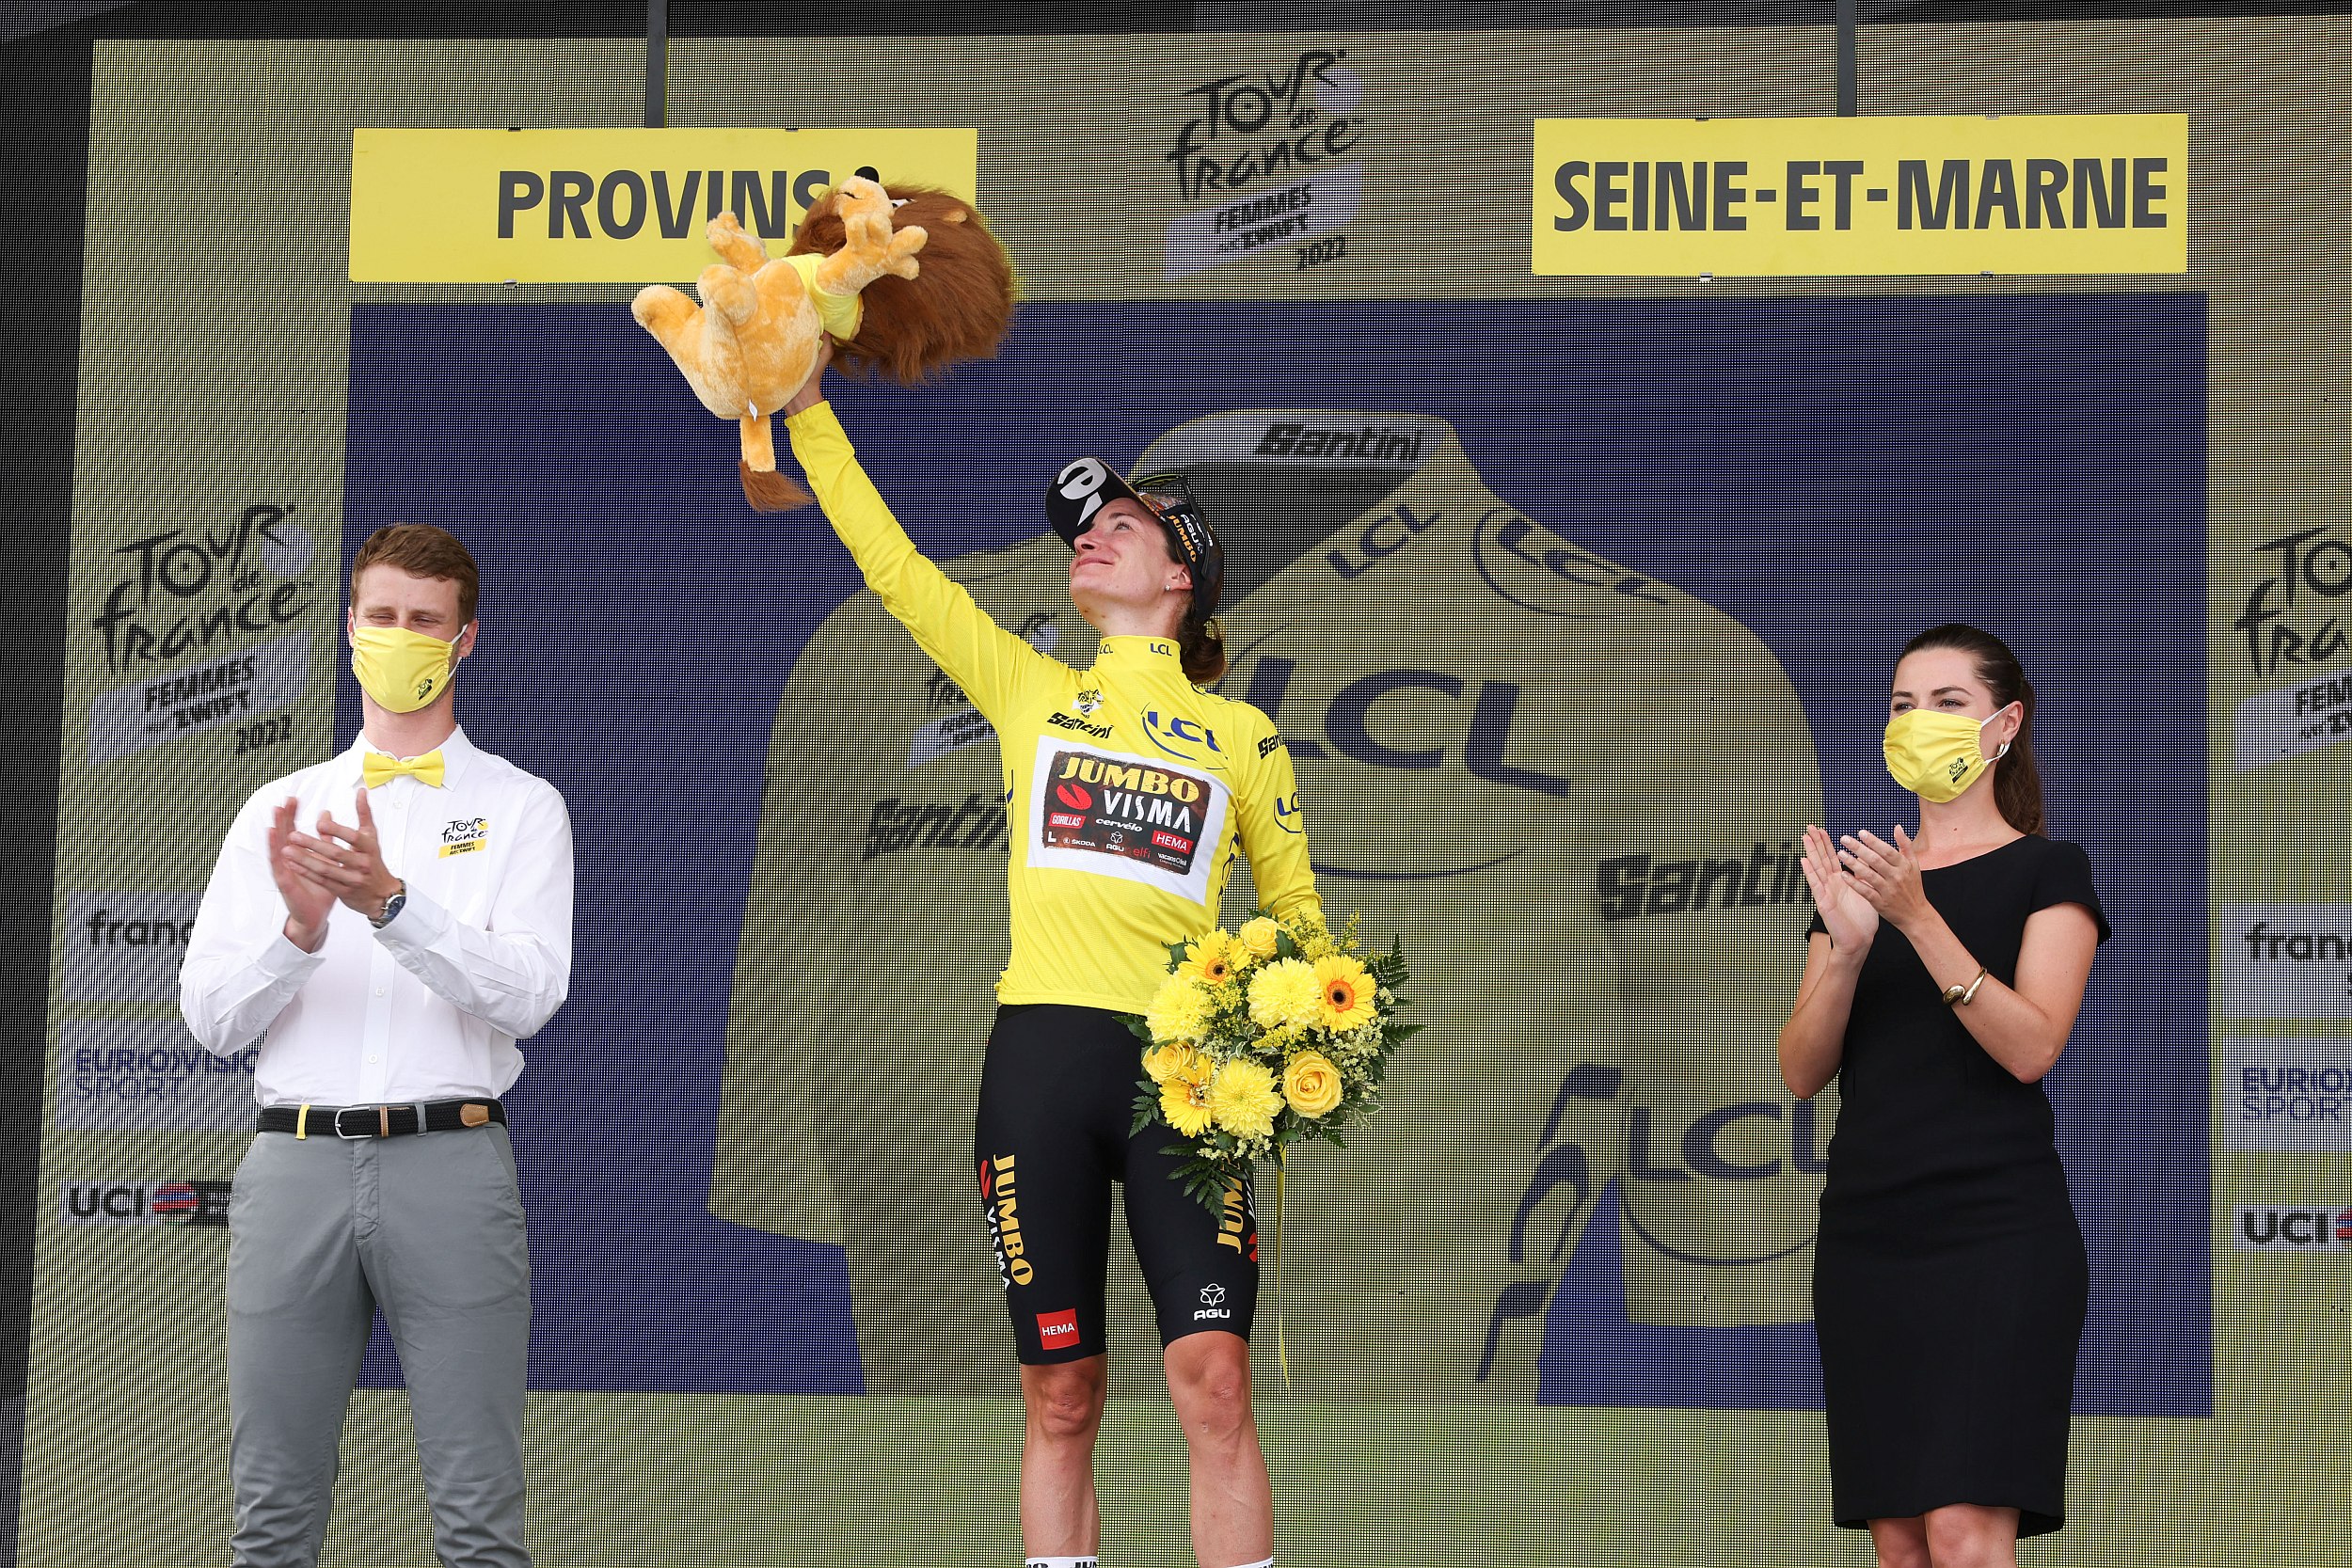 Marianne Vos w żółtej koszulce liderki Tour de France Femmes